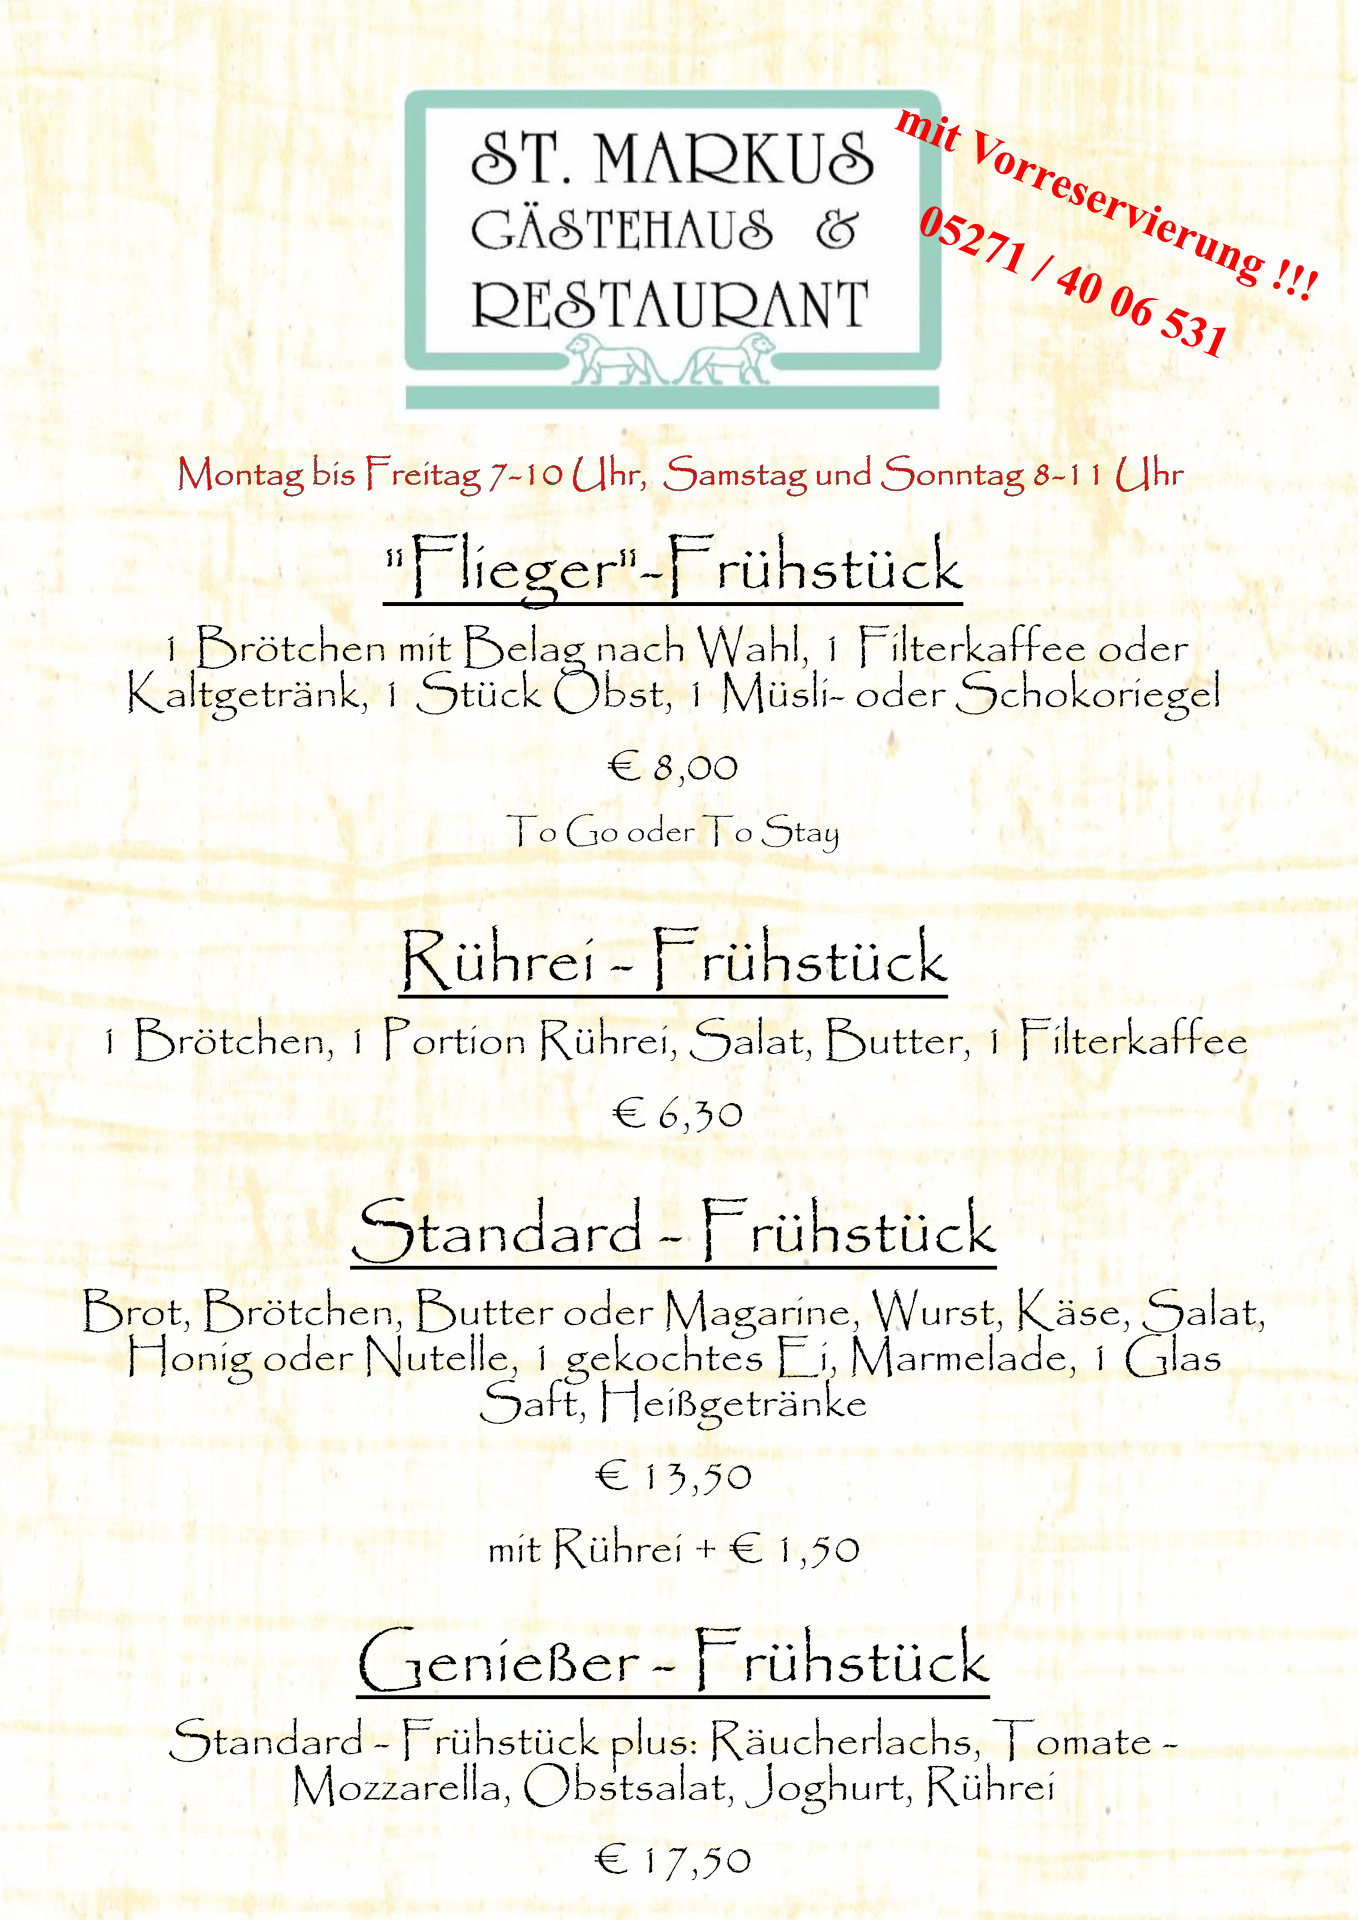 St Markus Restaurant - Frühstück in Höxter-Brenkhausen